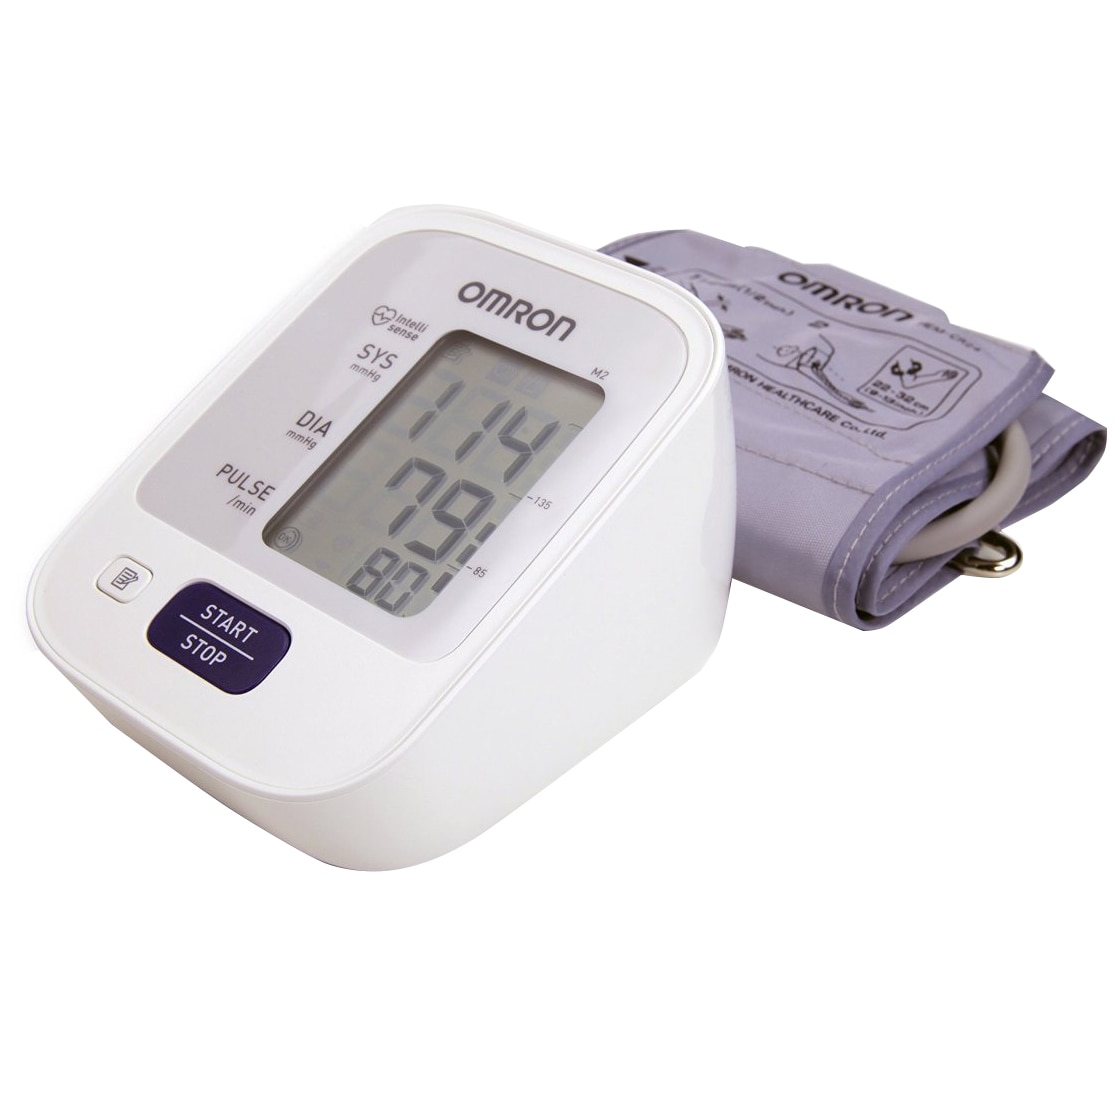 Vérnyomás értékei - Mit jelentenek a vérnyomásmérőn mért értékek?